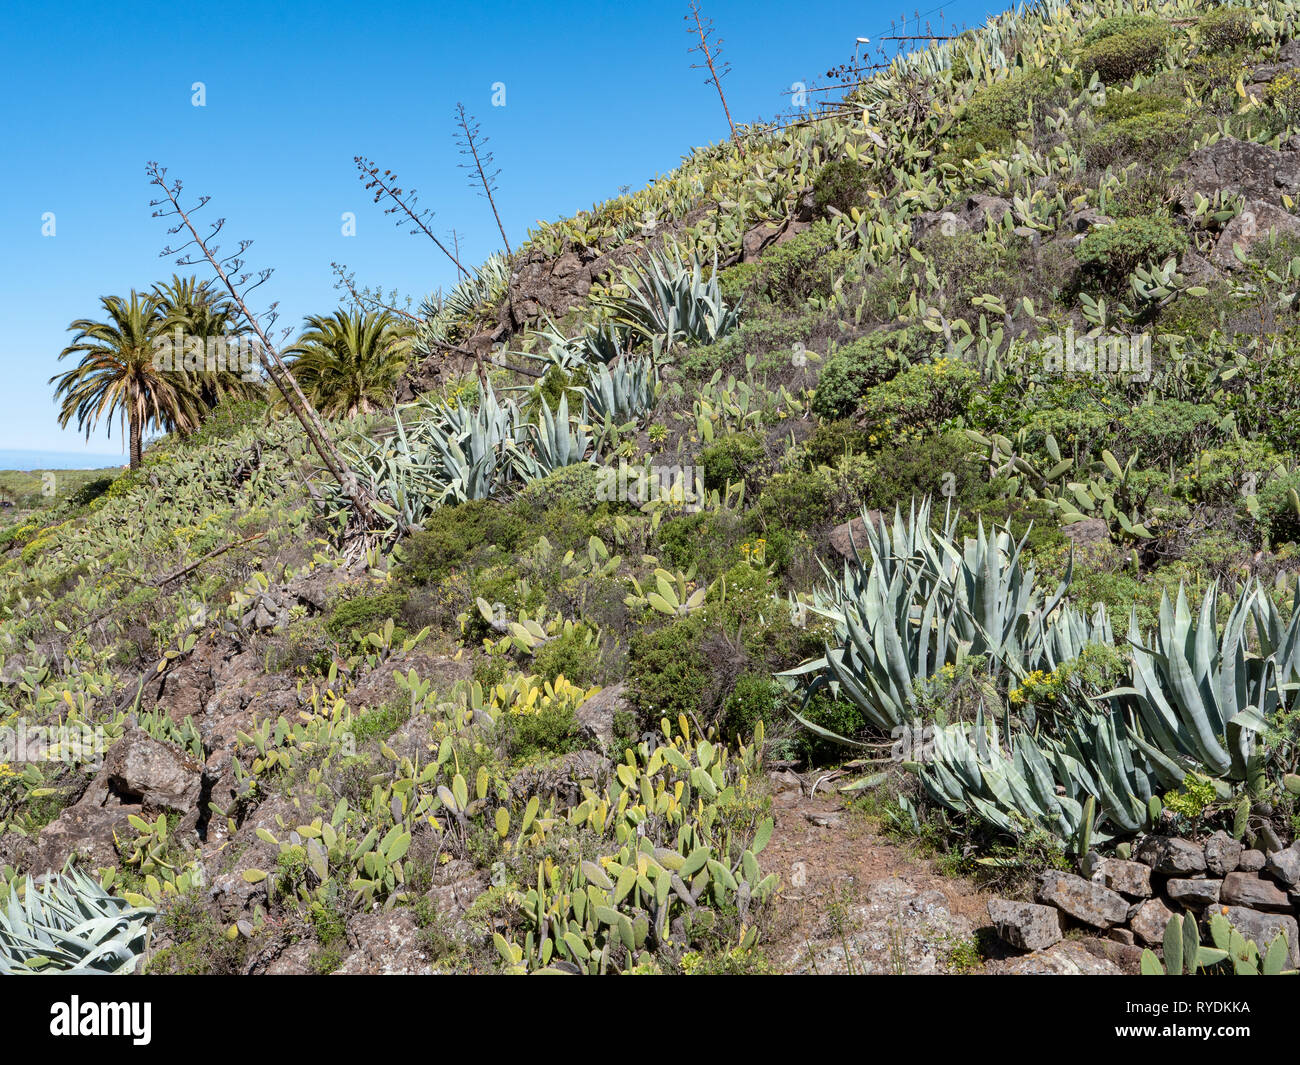 Una árida colina en la isla de La Gomera, en las Islas Canarias cubierto de agaves cactus Opuntia y palmeras y otra vegetación xerófila Foto de stock